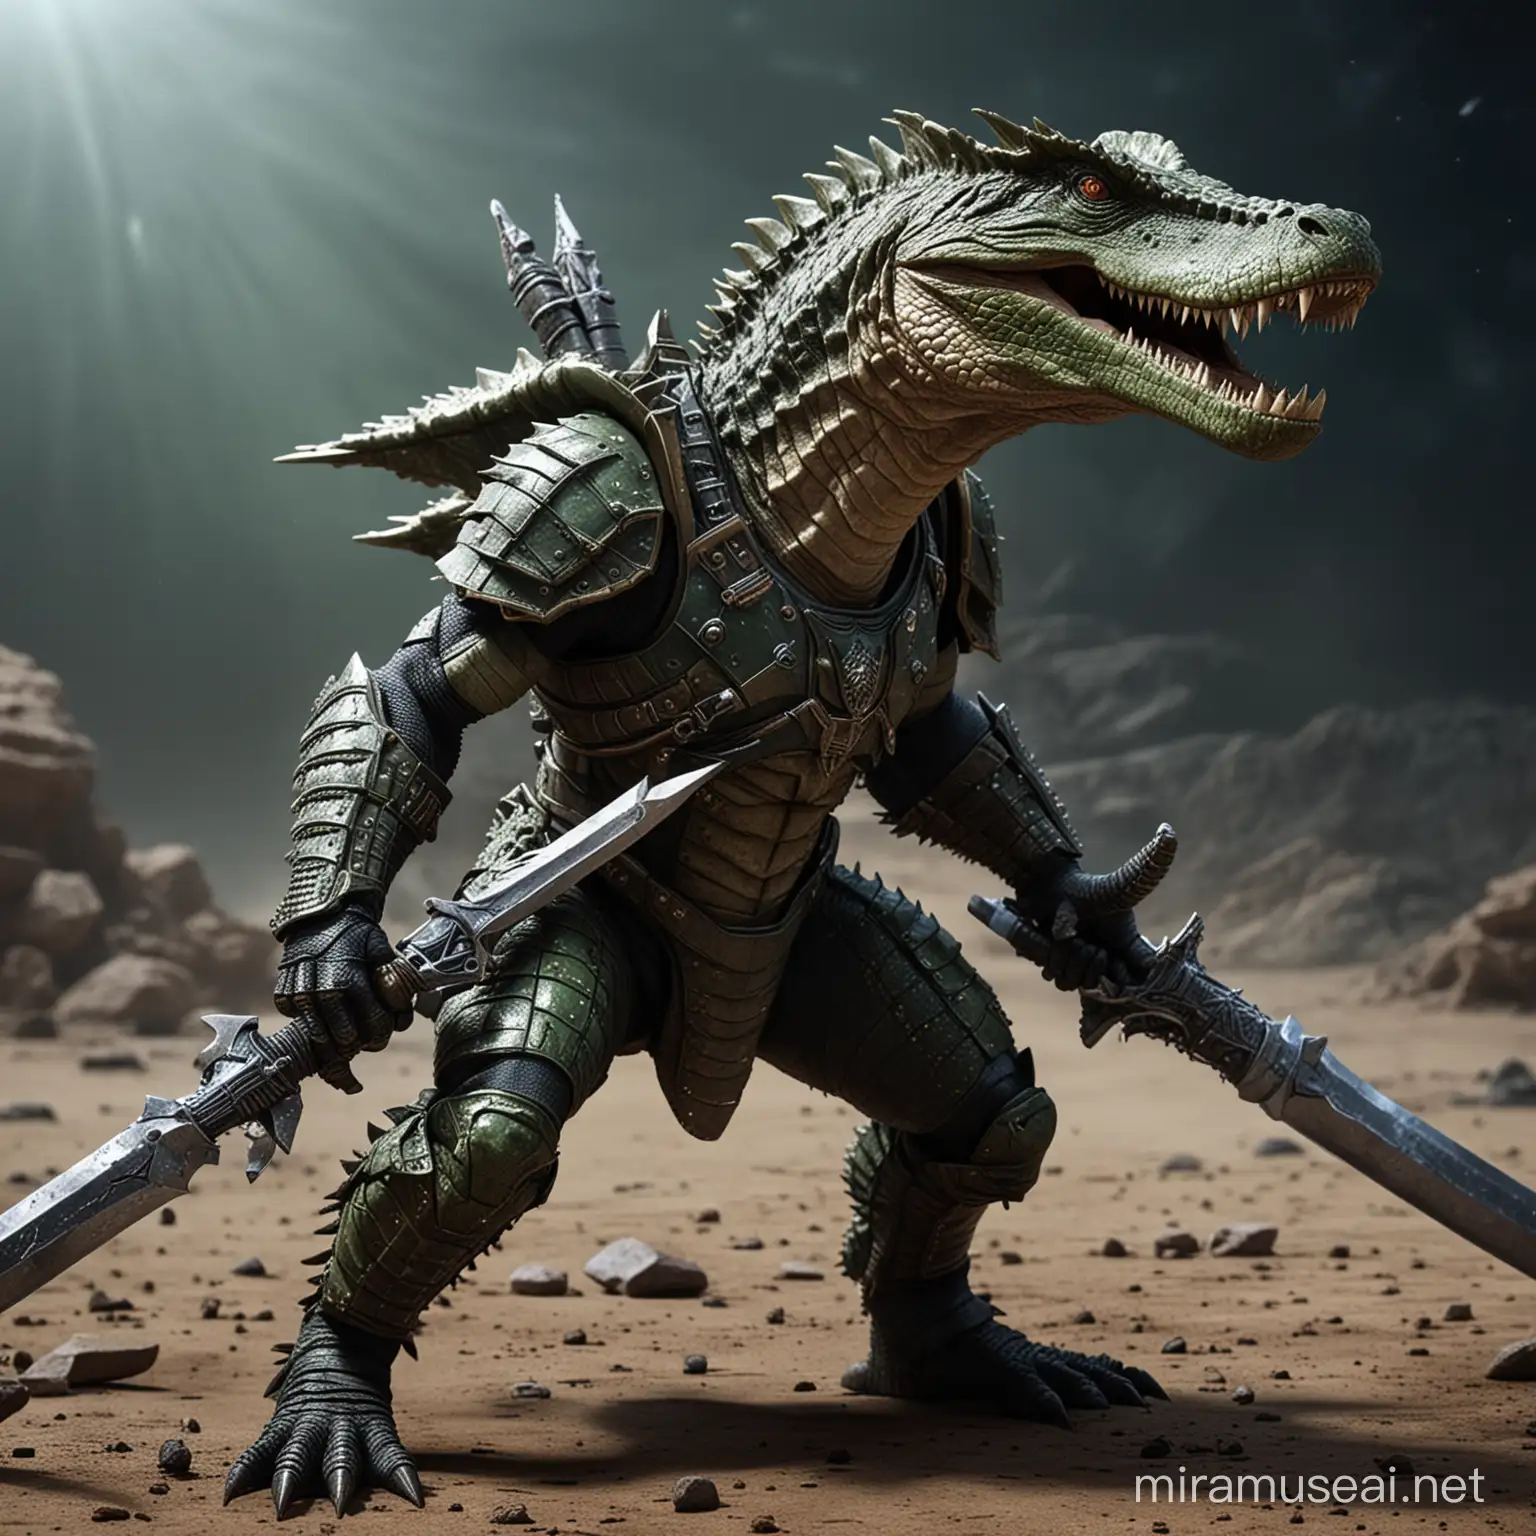 Reptil alienigena parecido a un cocodrilo, que es rudo, con una armadura espacial, y una espada.